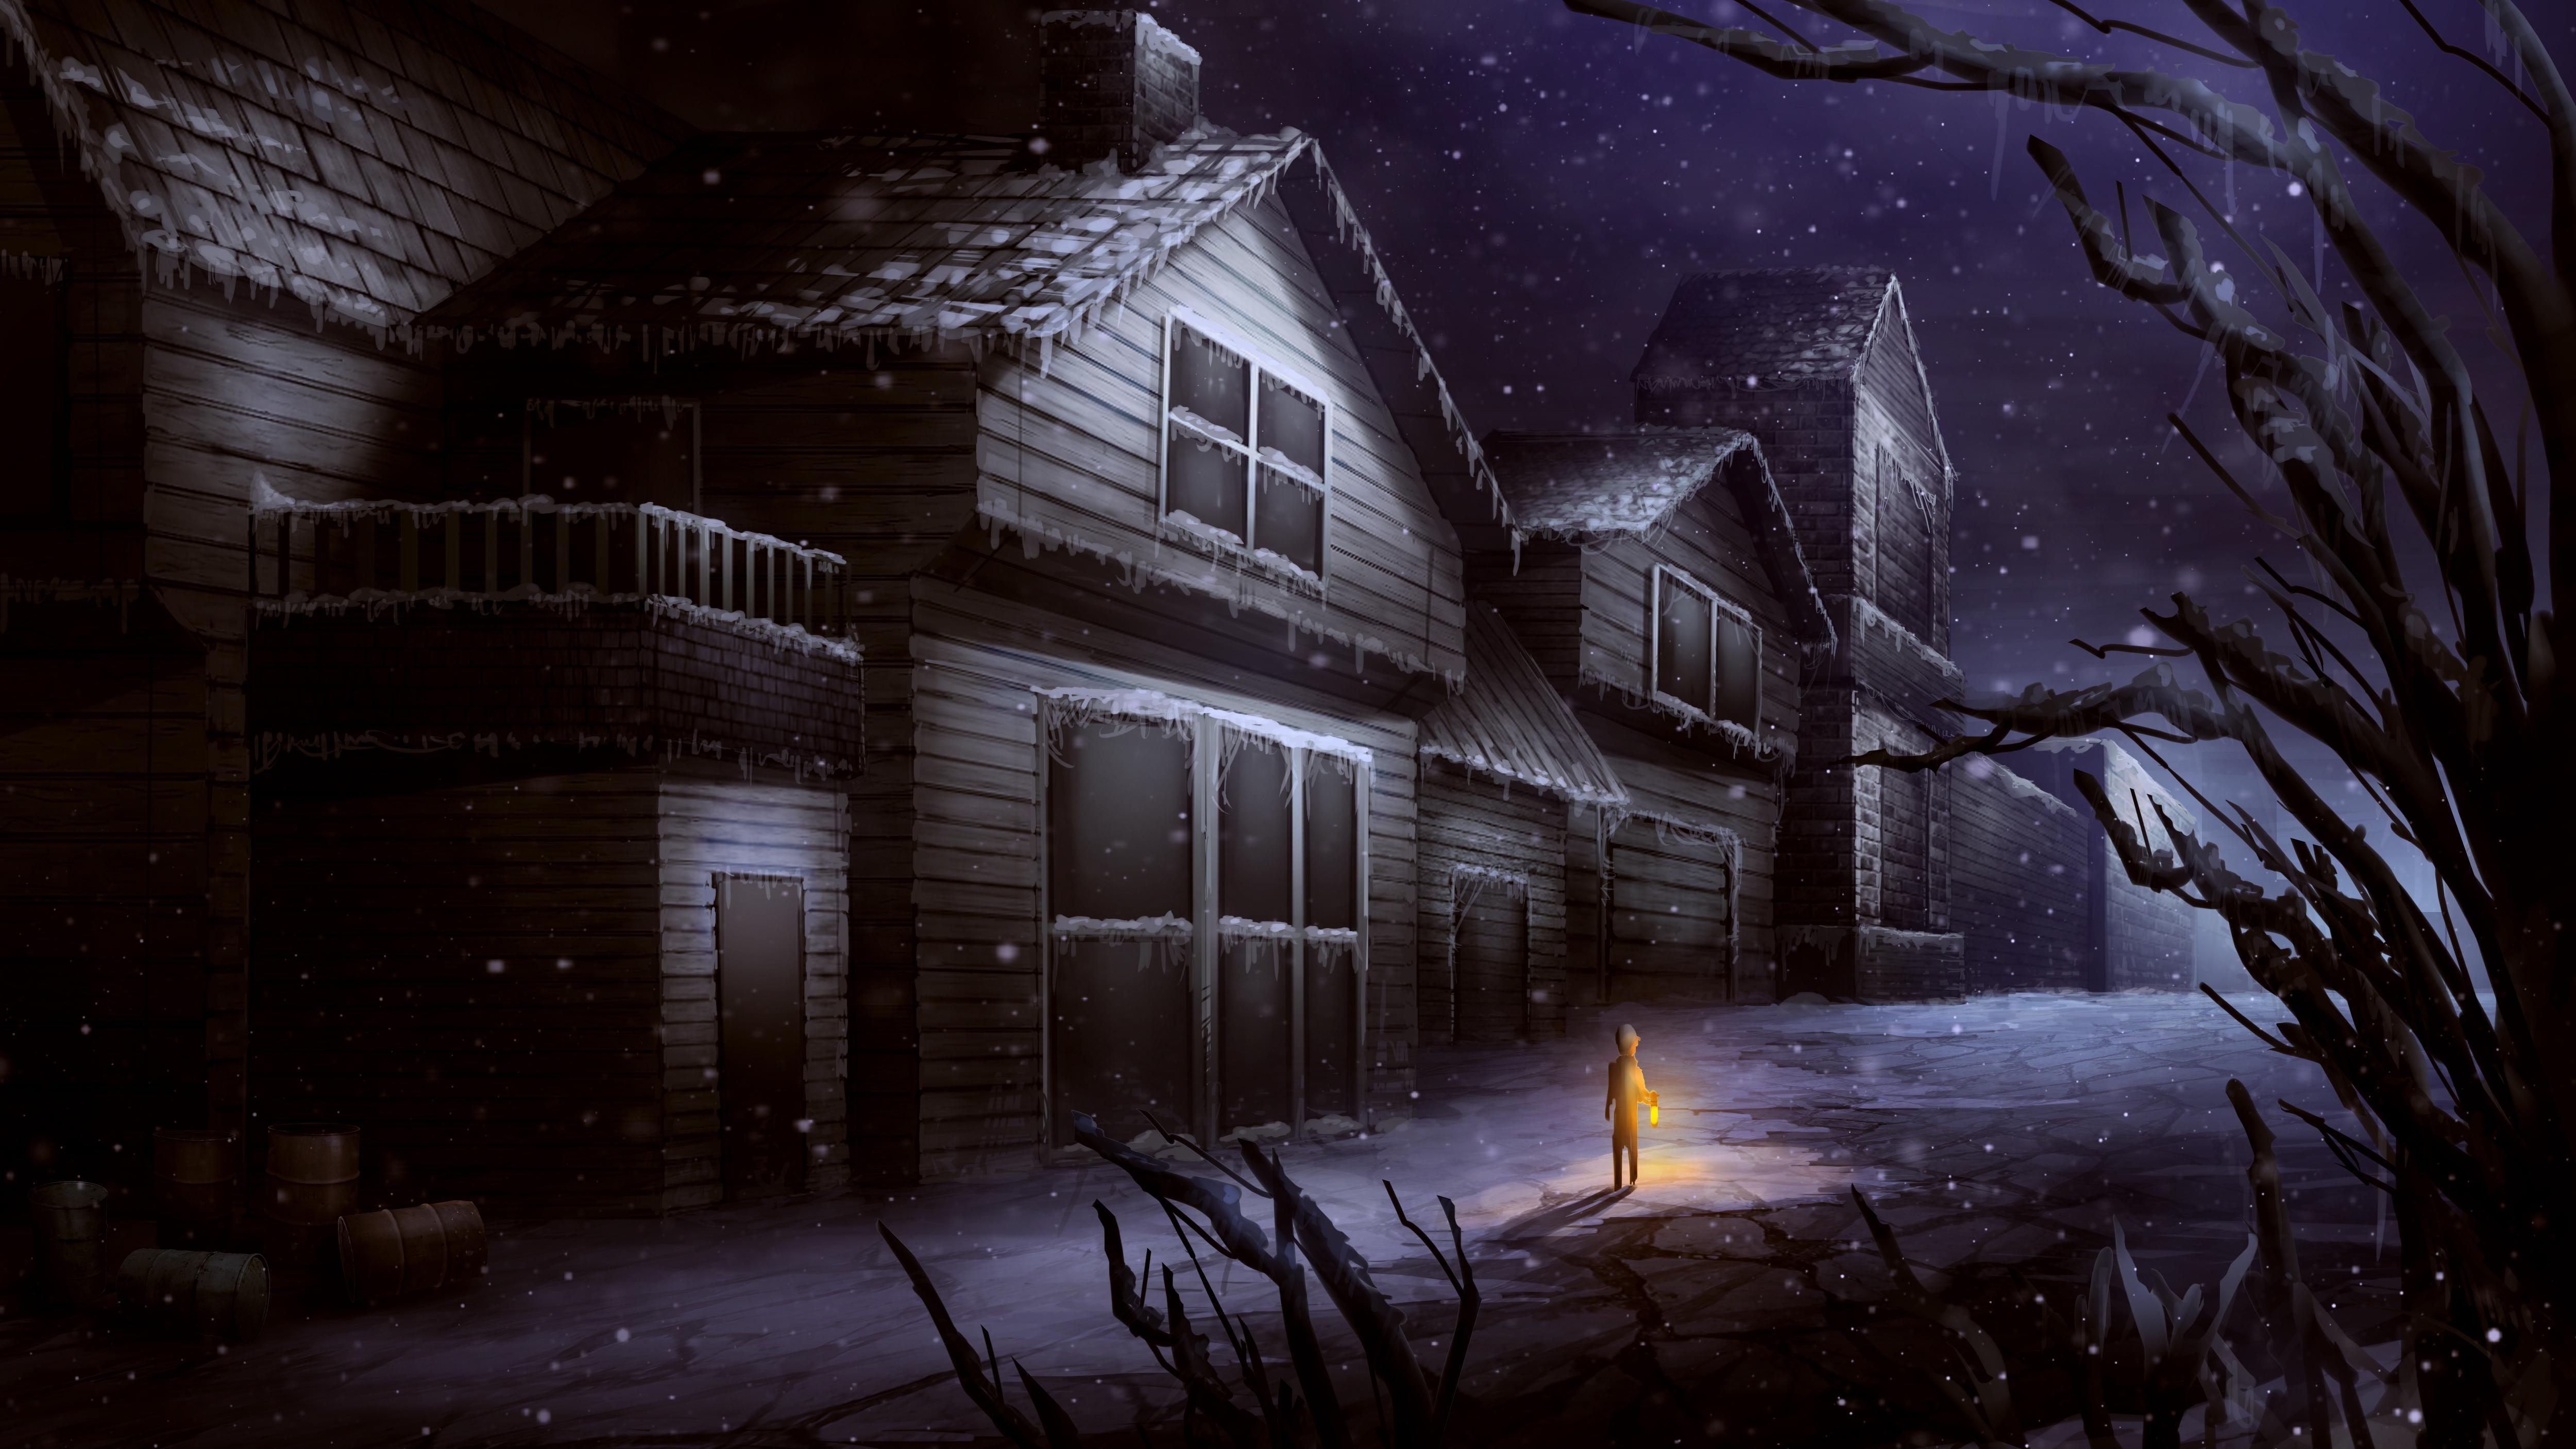 Little Boy Alone on Winter Night 4k Ultra HD Wallpaper